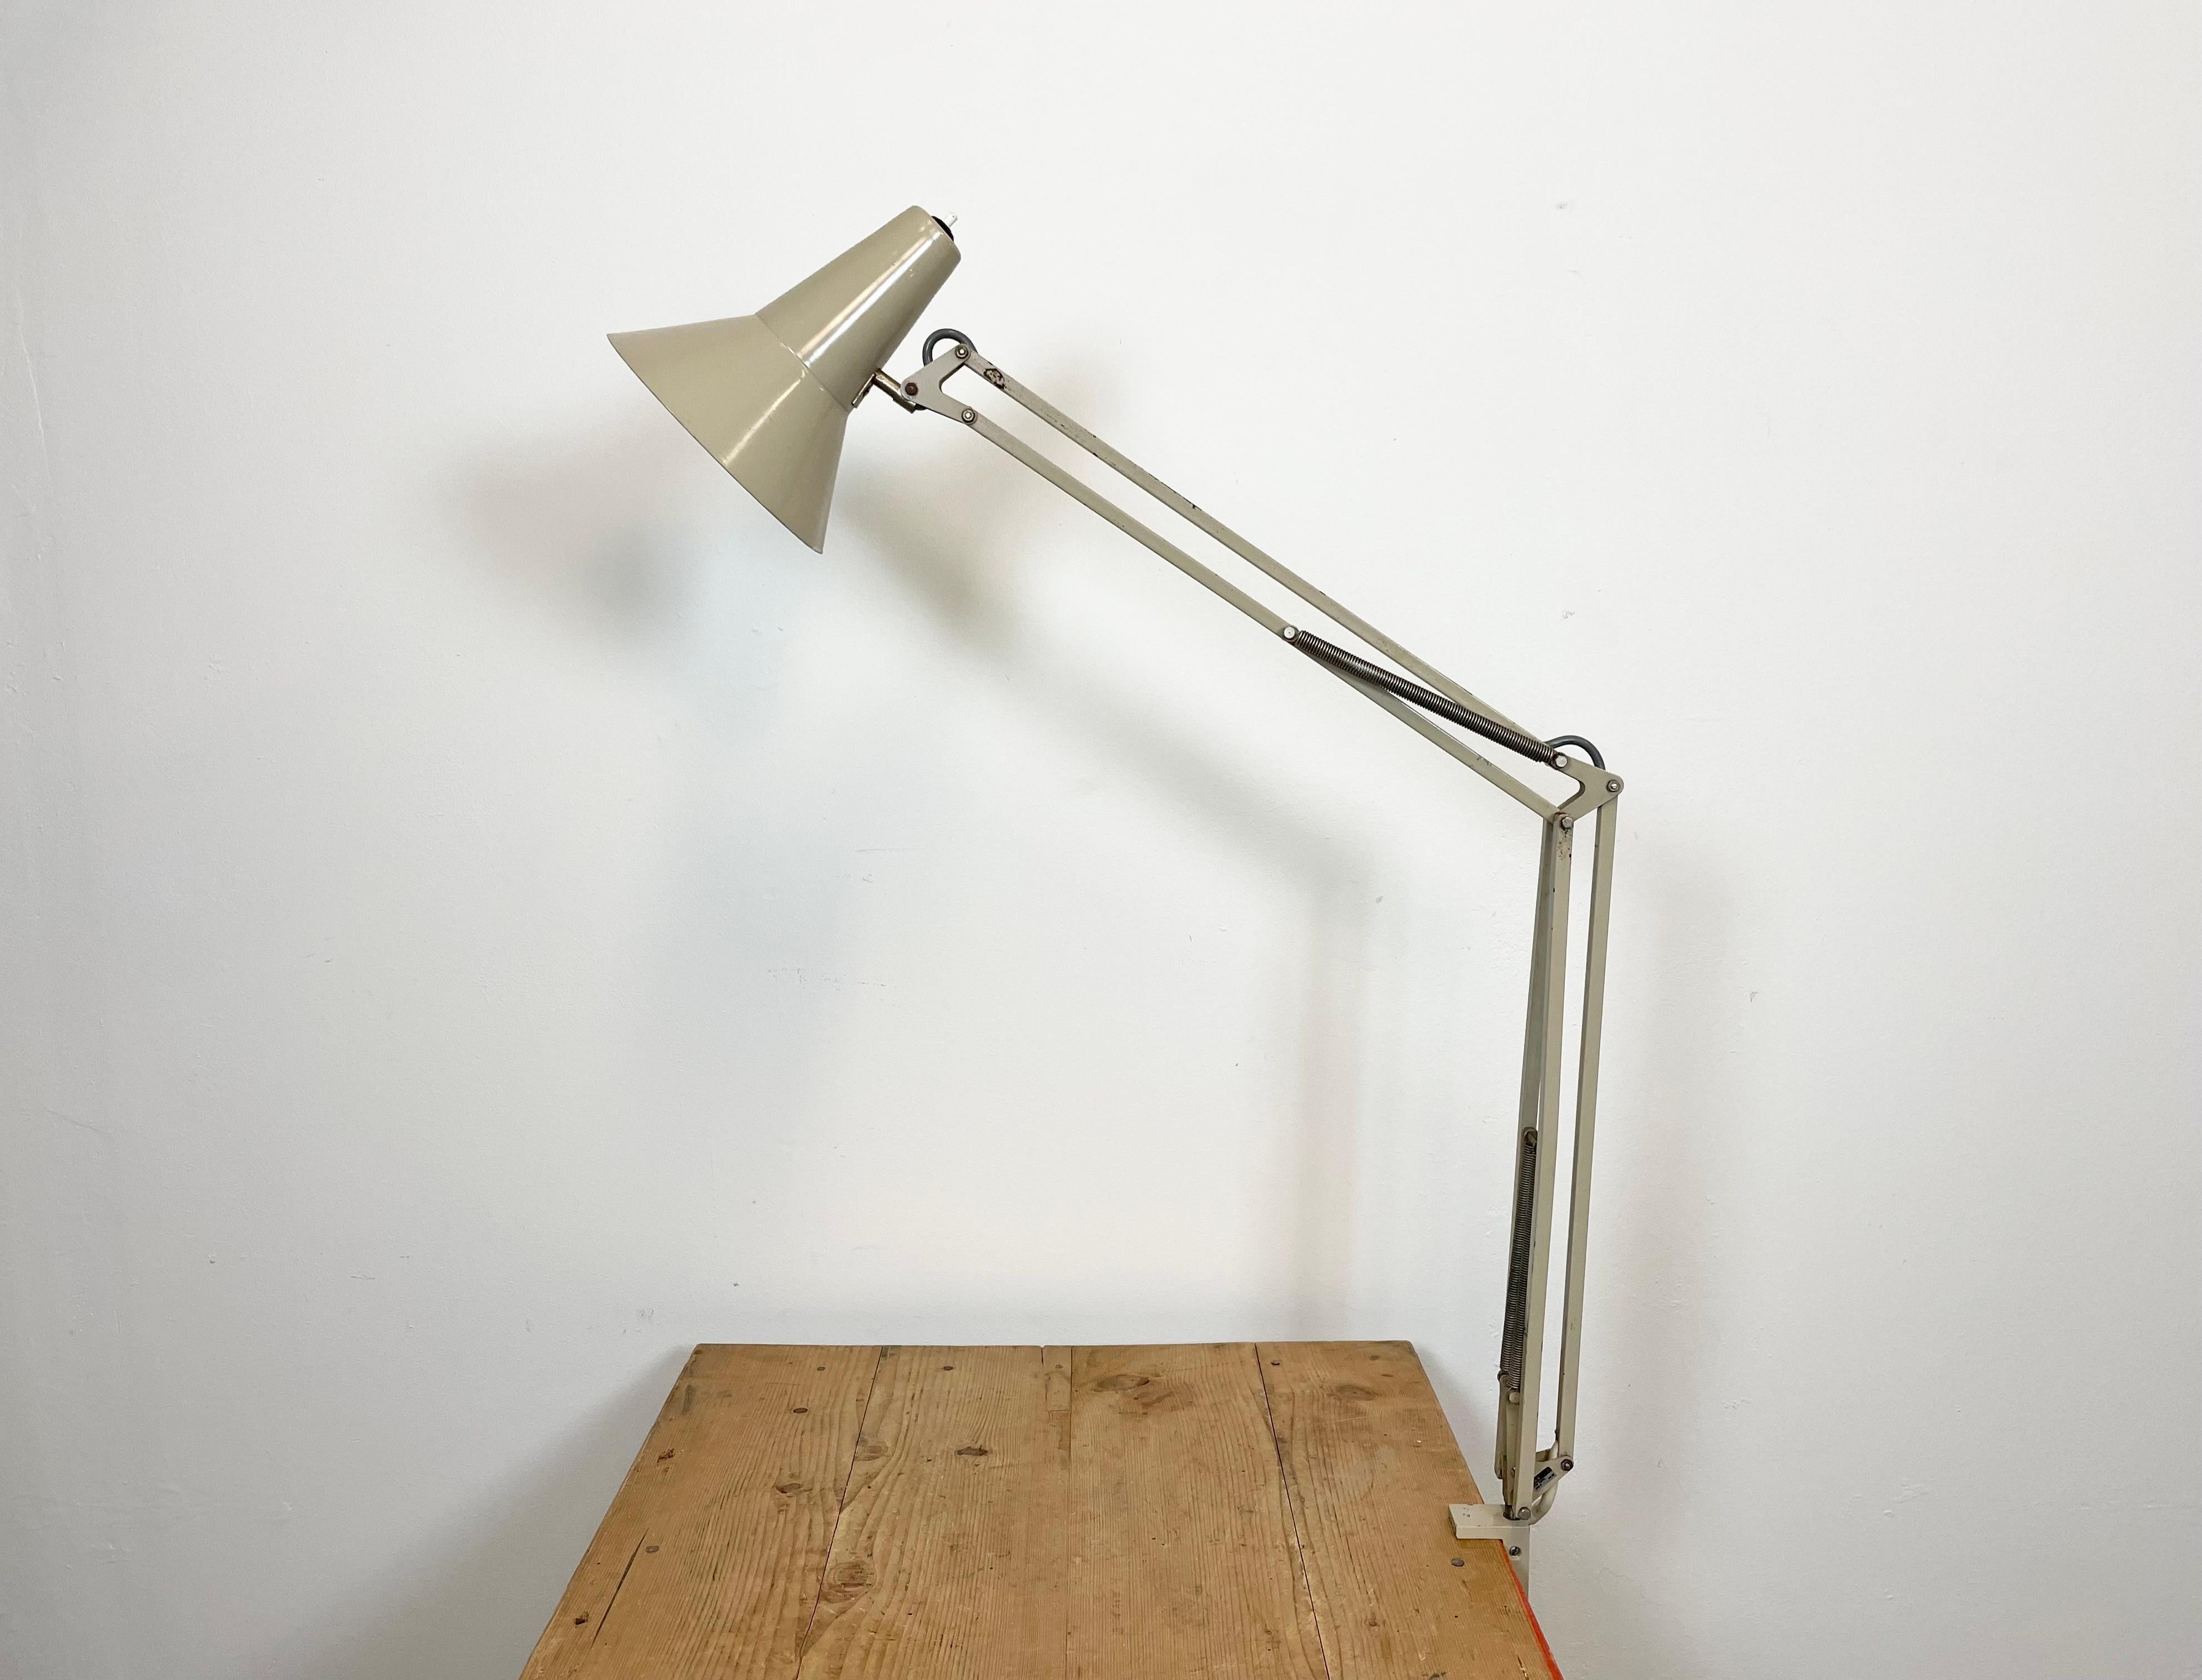 Lampe de table réglable vintage beige fabriquée par FAX en ex-Tchécoslovaquie dans les années 1970. Elle se compose d'un abat-jour en aluminium avec interrupteur original, d'un bras en fer et d'une base à pince. La douille nécessite des ampoules